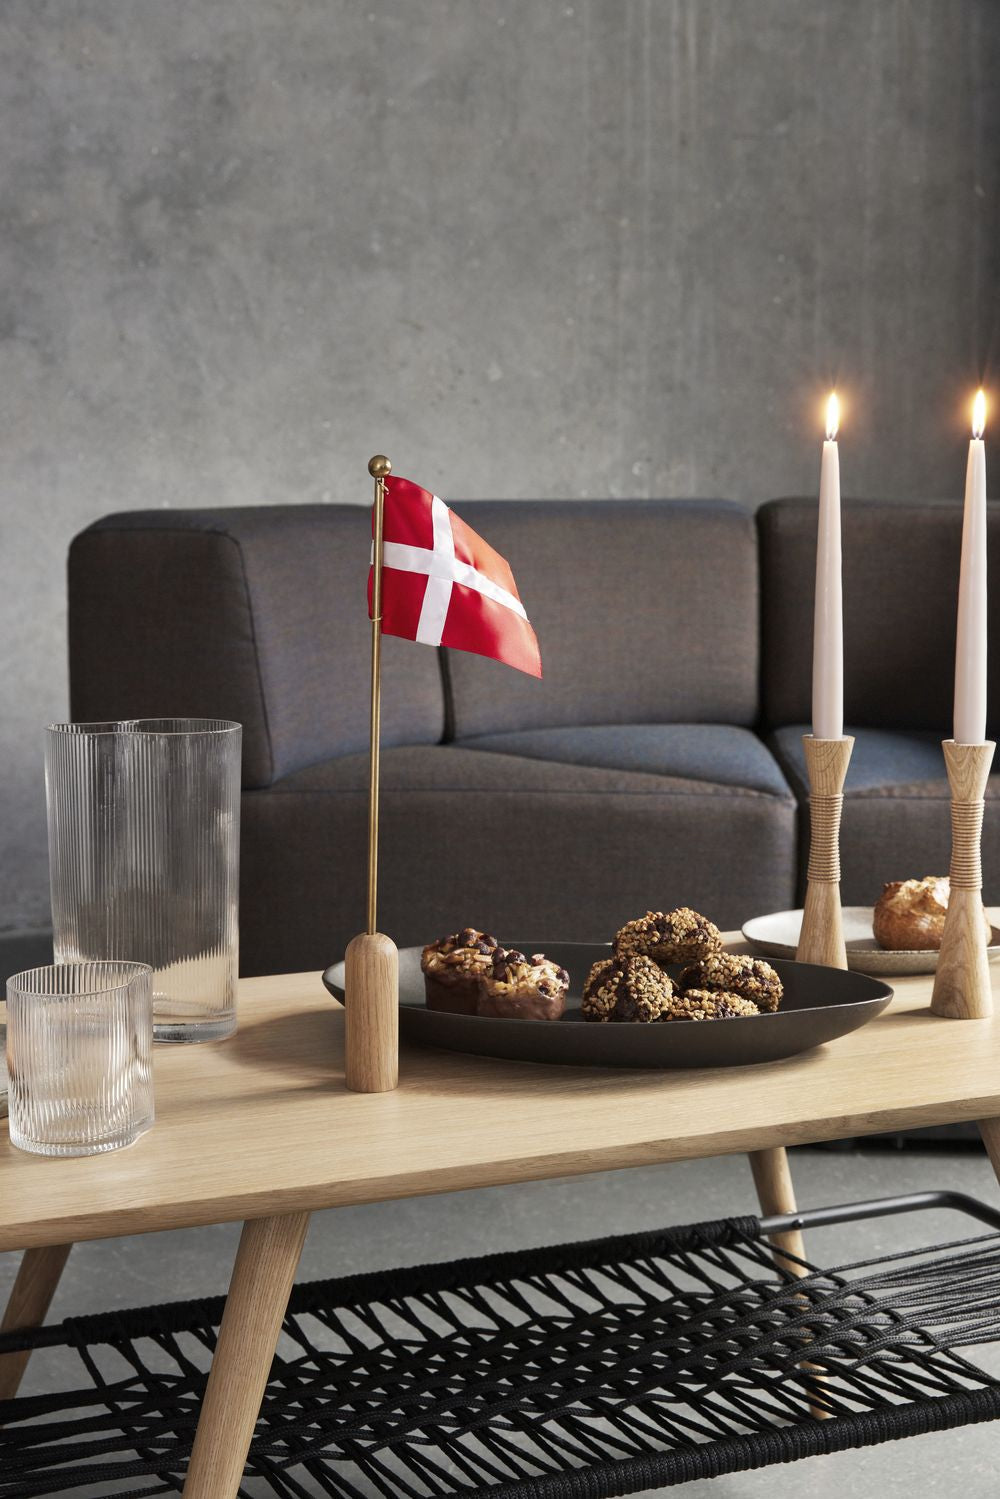 Andersen Furniture Fira bordsflagga Dannebrog H40 cm